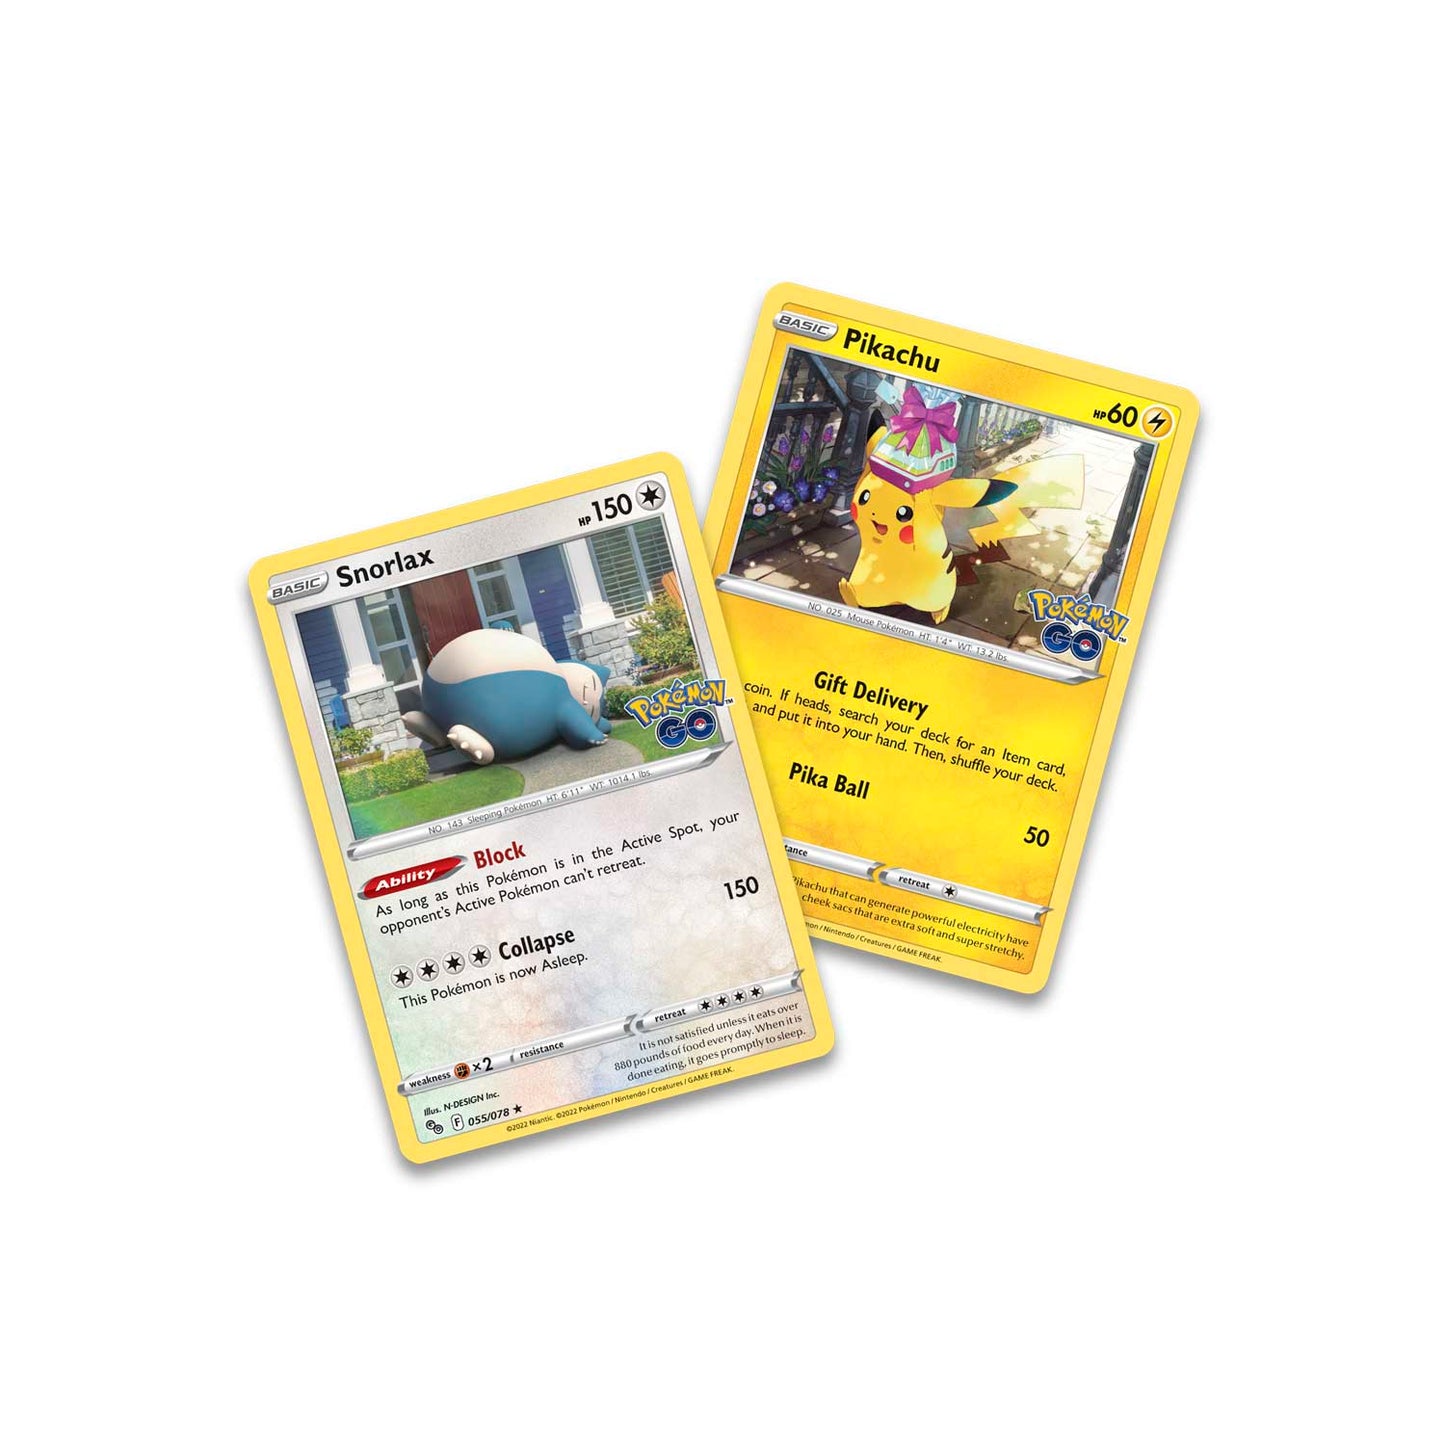 Pokémon TCG: Pokémon GO Tin (Snorlax)